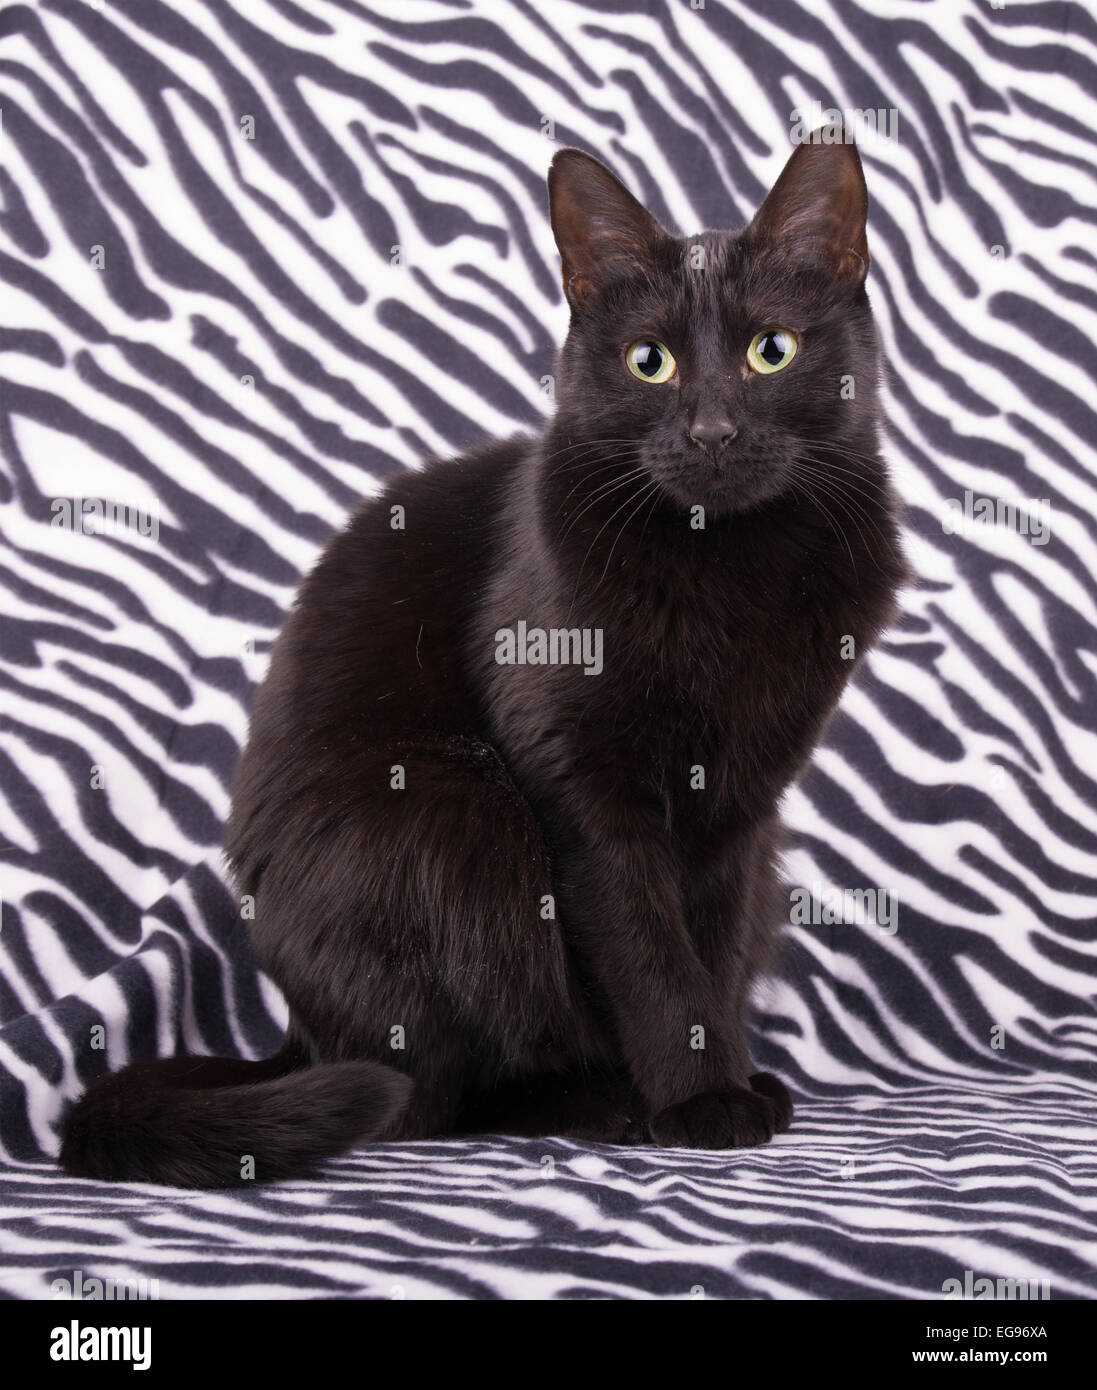 Adorabile gatto nero seduto su stampa zebra Foto Stock